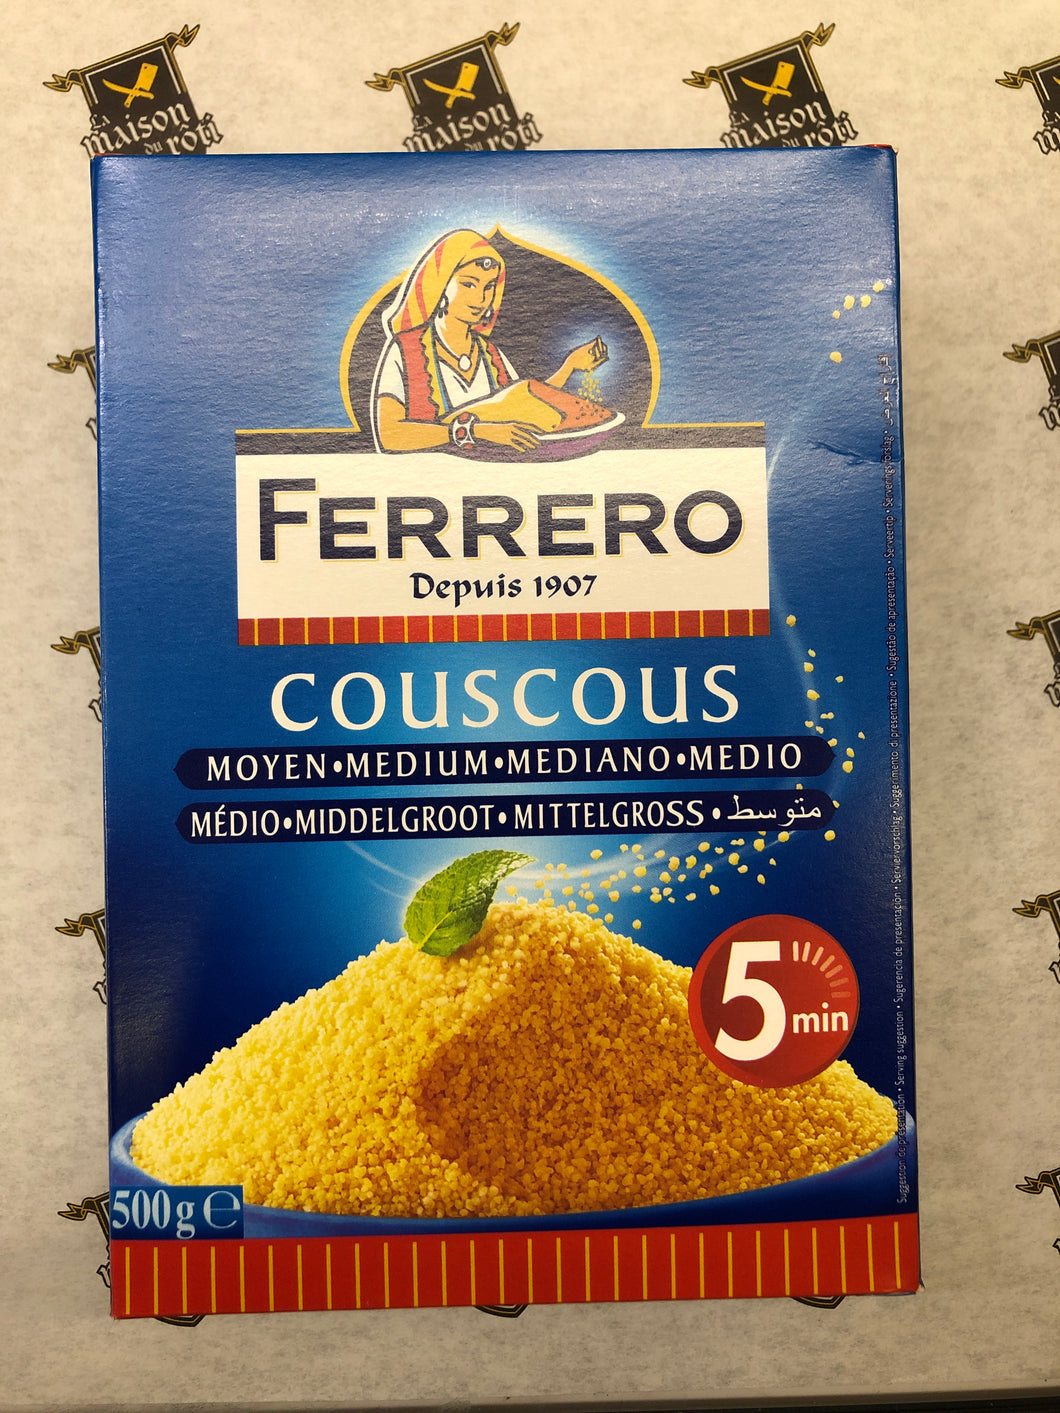 Couscous Ferrero (4554320773220)